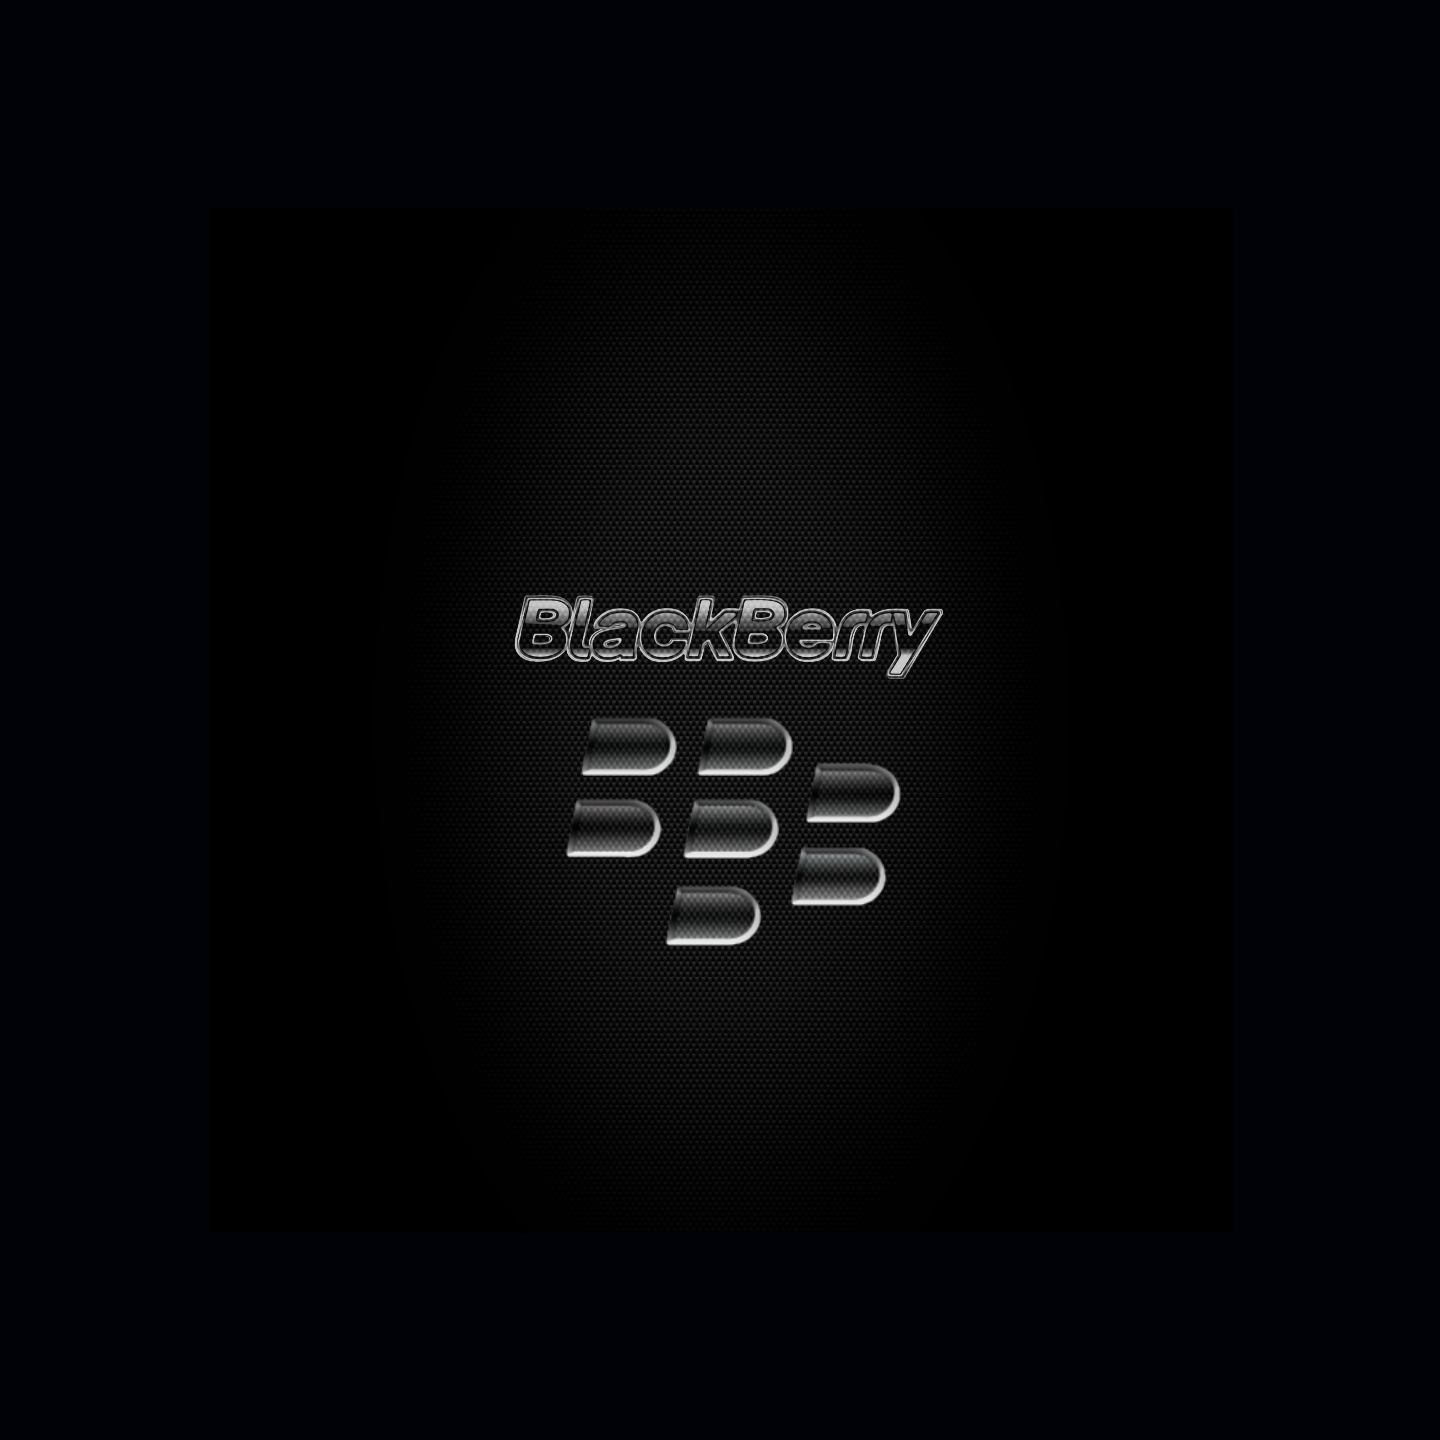 Khám phá những hình nền cực kỳ ấn tượng và độc đáo của Blackberry Classic! Mỗi thiết kế đều thể hiện sự thanh lịch và tinh tế, làm cho điện thoại của bạn trở nên độc đáo và nổi bật hơn bao giờ hết.